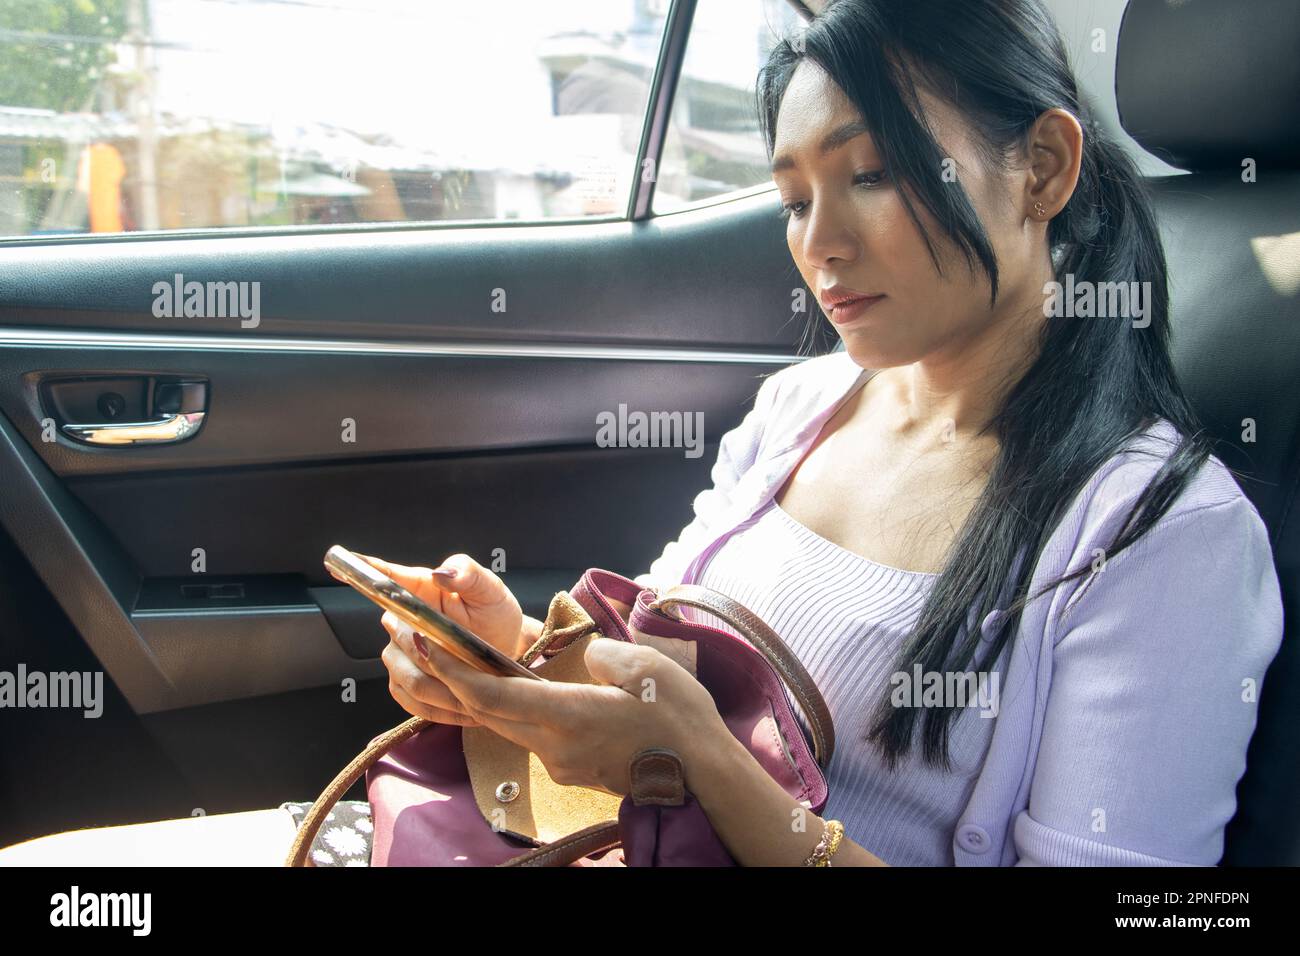 Eine junge Frau mit Handtasche beobachtet ihr Handy, während sie im fahrenden Auto sitzt Stockfoto